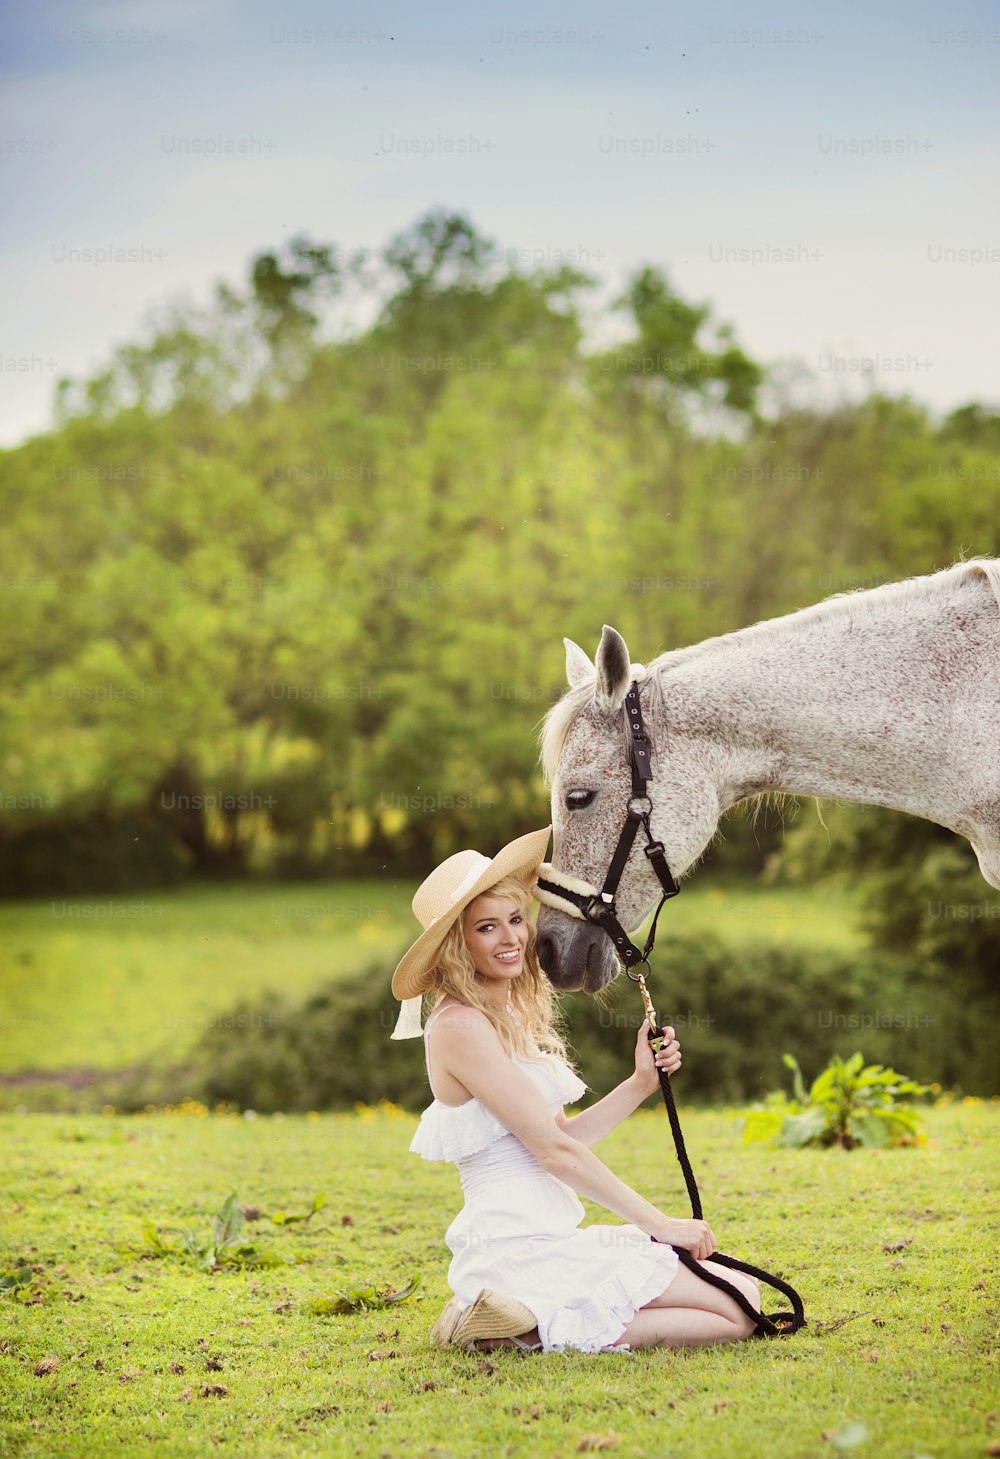 하얀 드레스를 입은 여자가 녹색 시골에서 말과 함께 걷고 있다